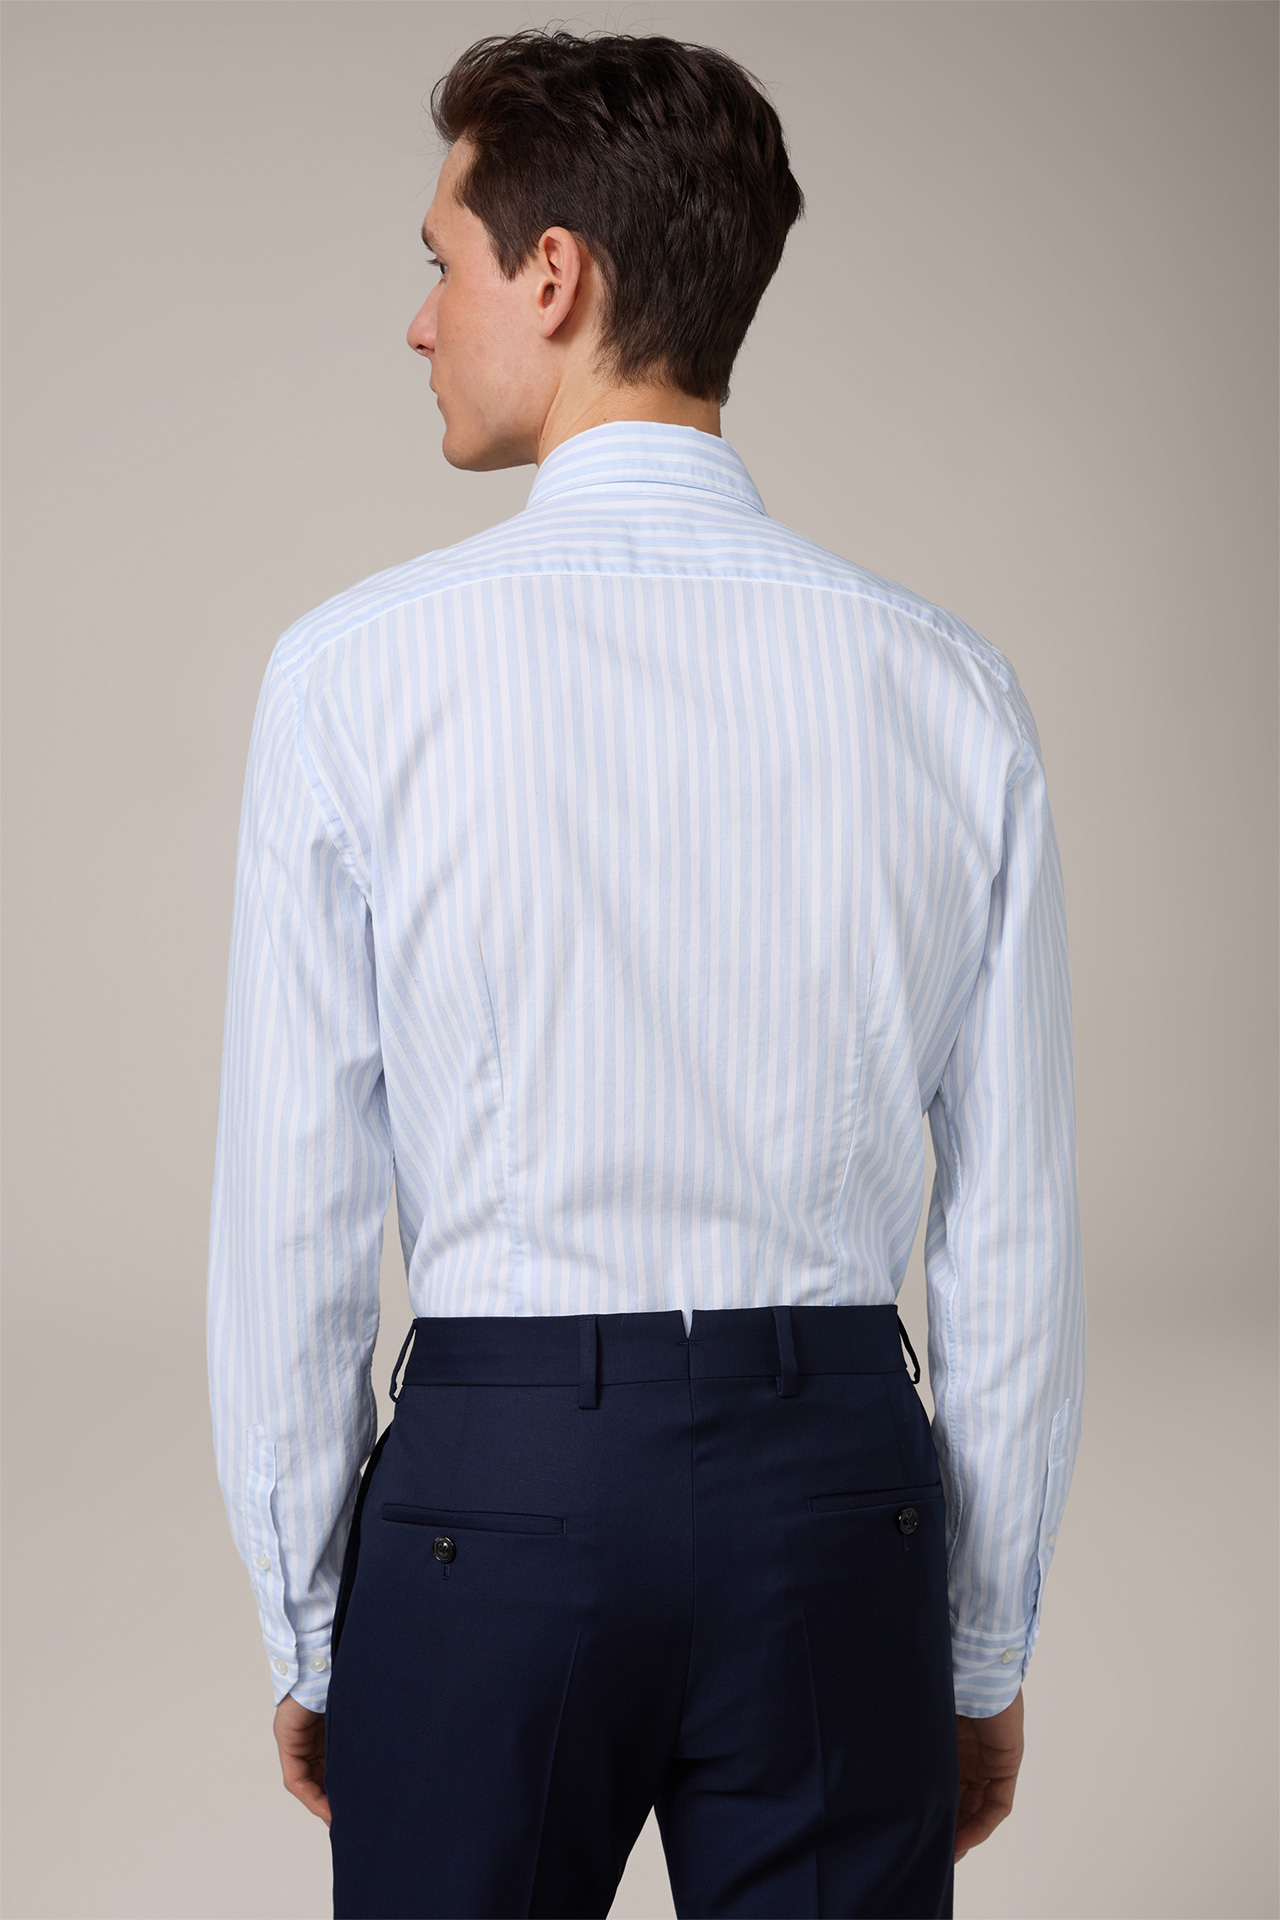 Chemise en coton Lano, en bleu clair et blanc à rayures